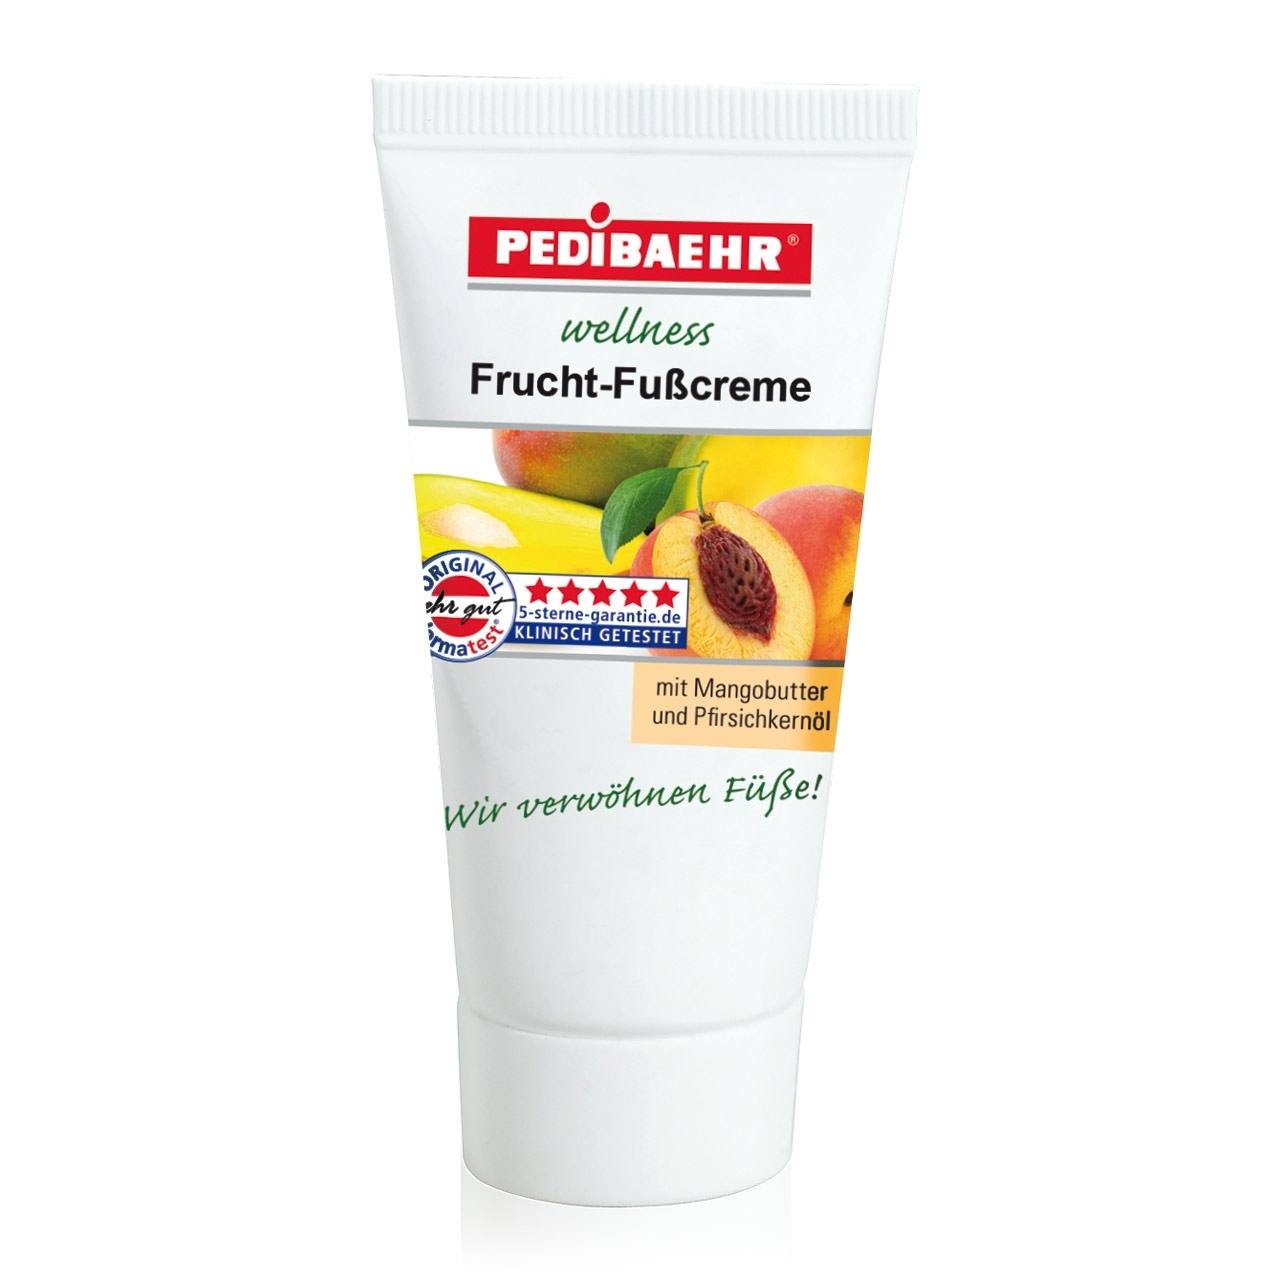 PEDIBAEHR - Wellness Frucht-Fußcreme mit Mangobutter und Pfirsichkernöl, 30 ml